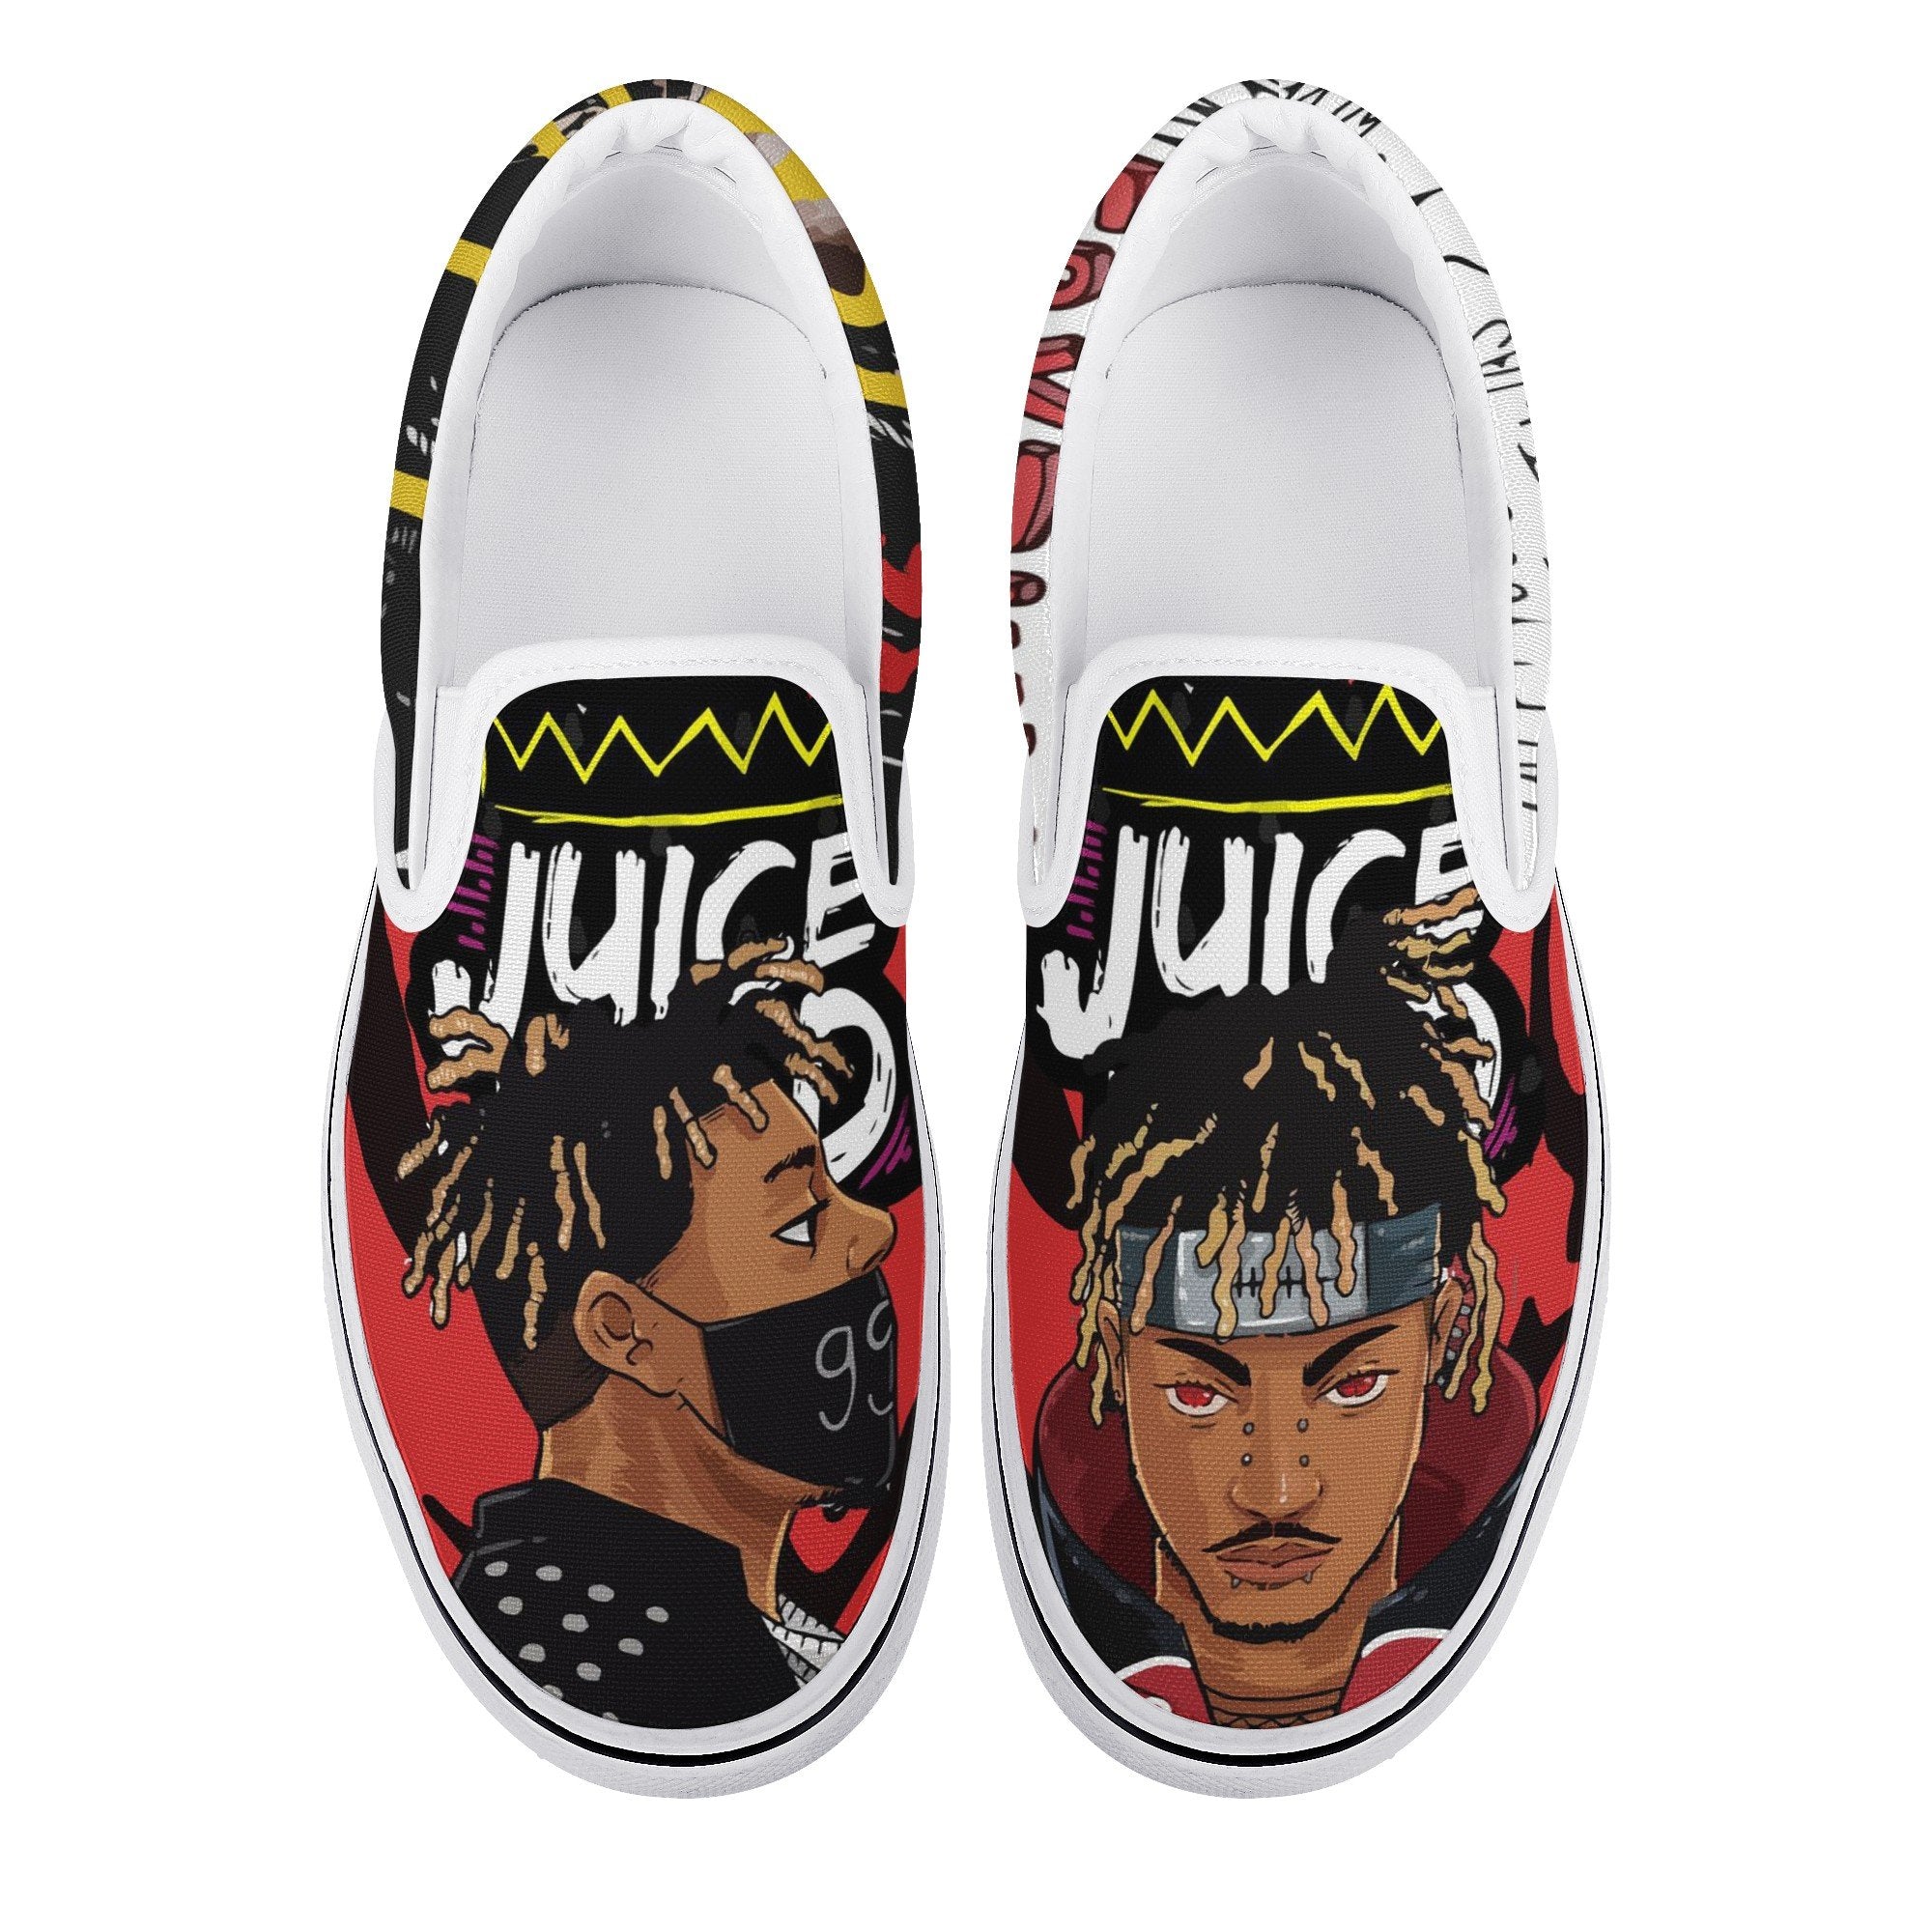 Juice Wrld 999 Slip On Shoes For Men And Women - Freedomdesign